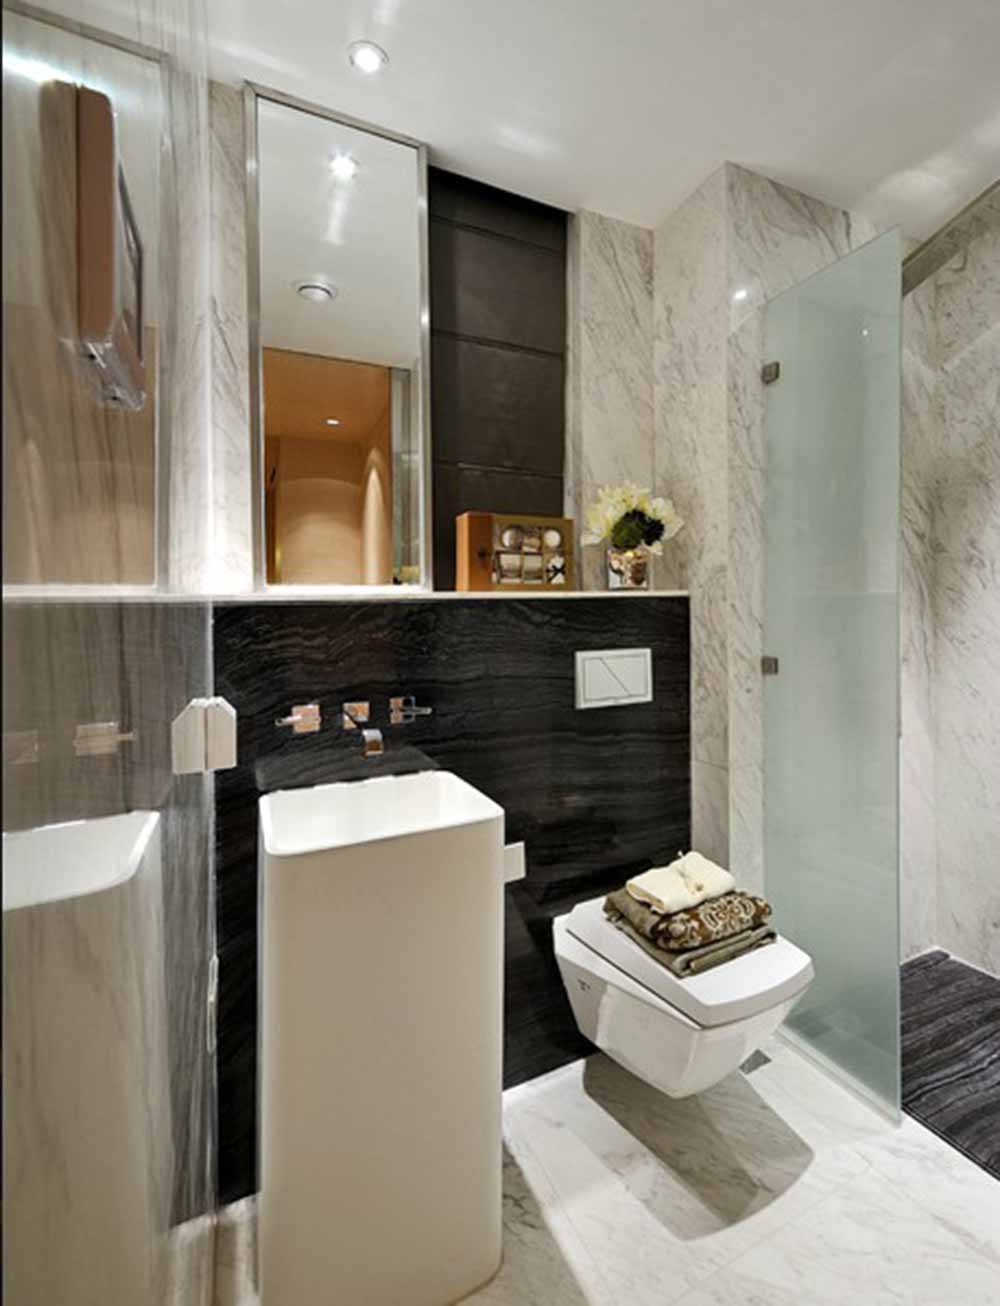 白色和黑色瓷砖铺贴成的卫生间墙壁把现代的利落感一并带出。